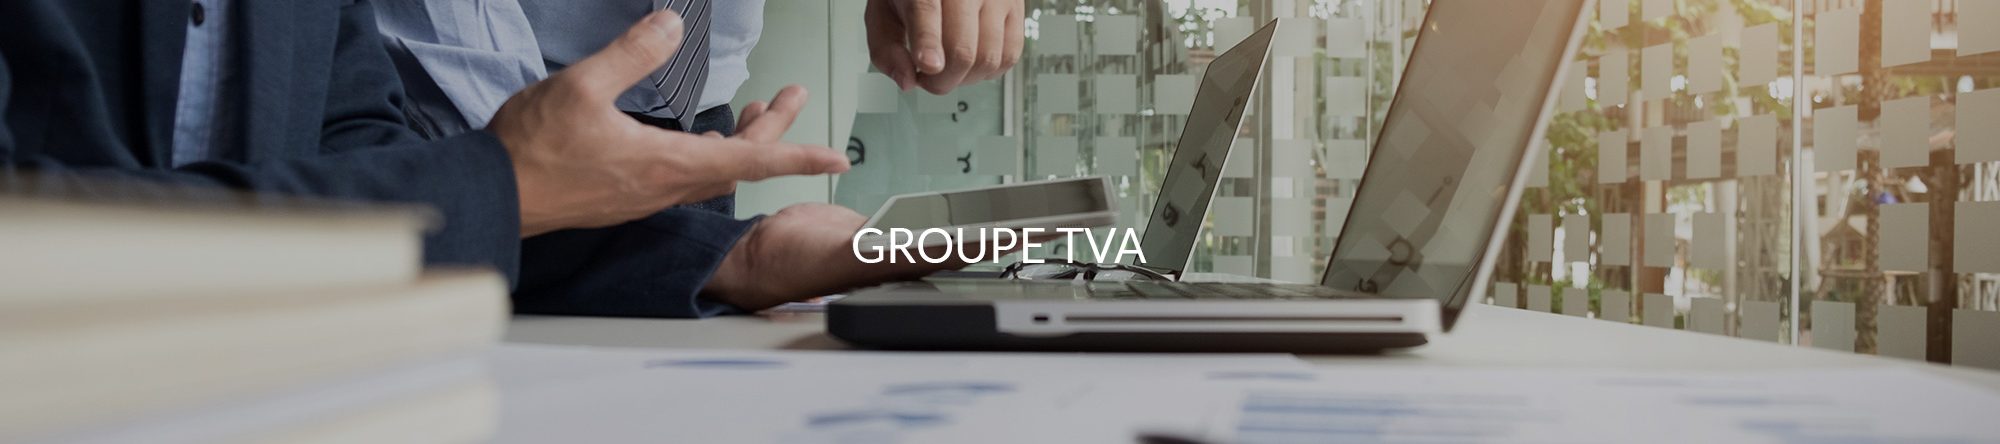 Header-Groupe-TVA